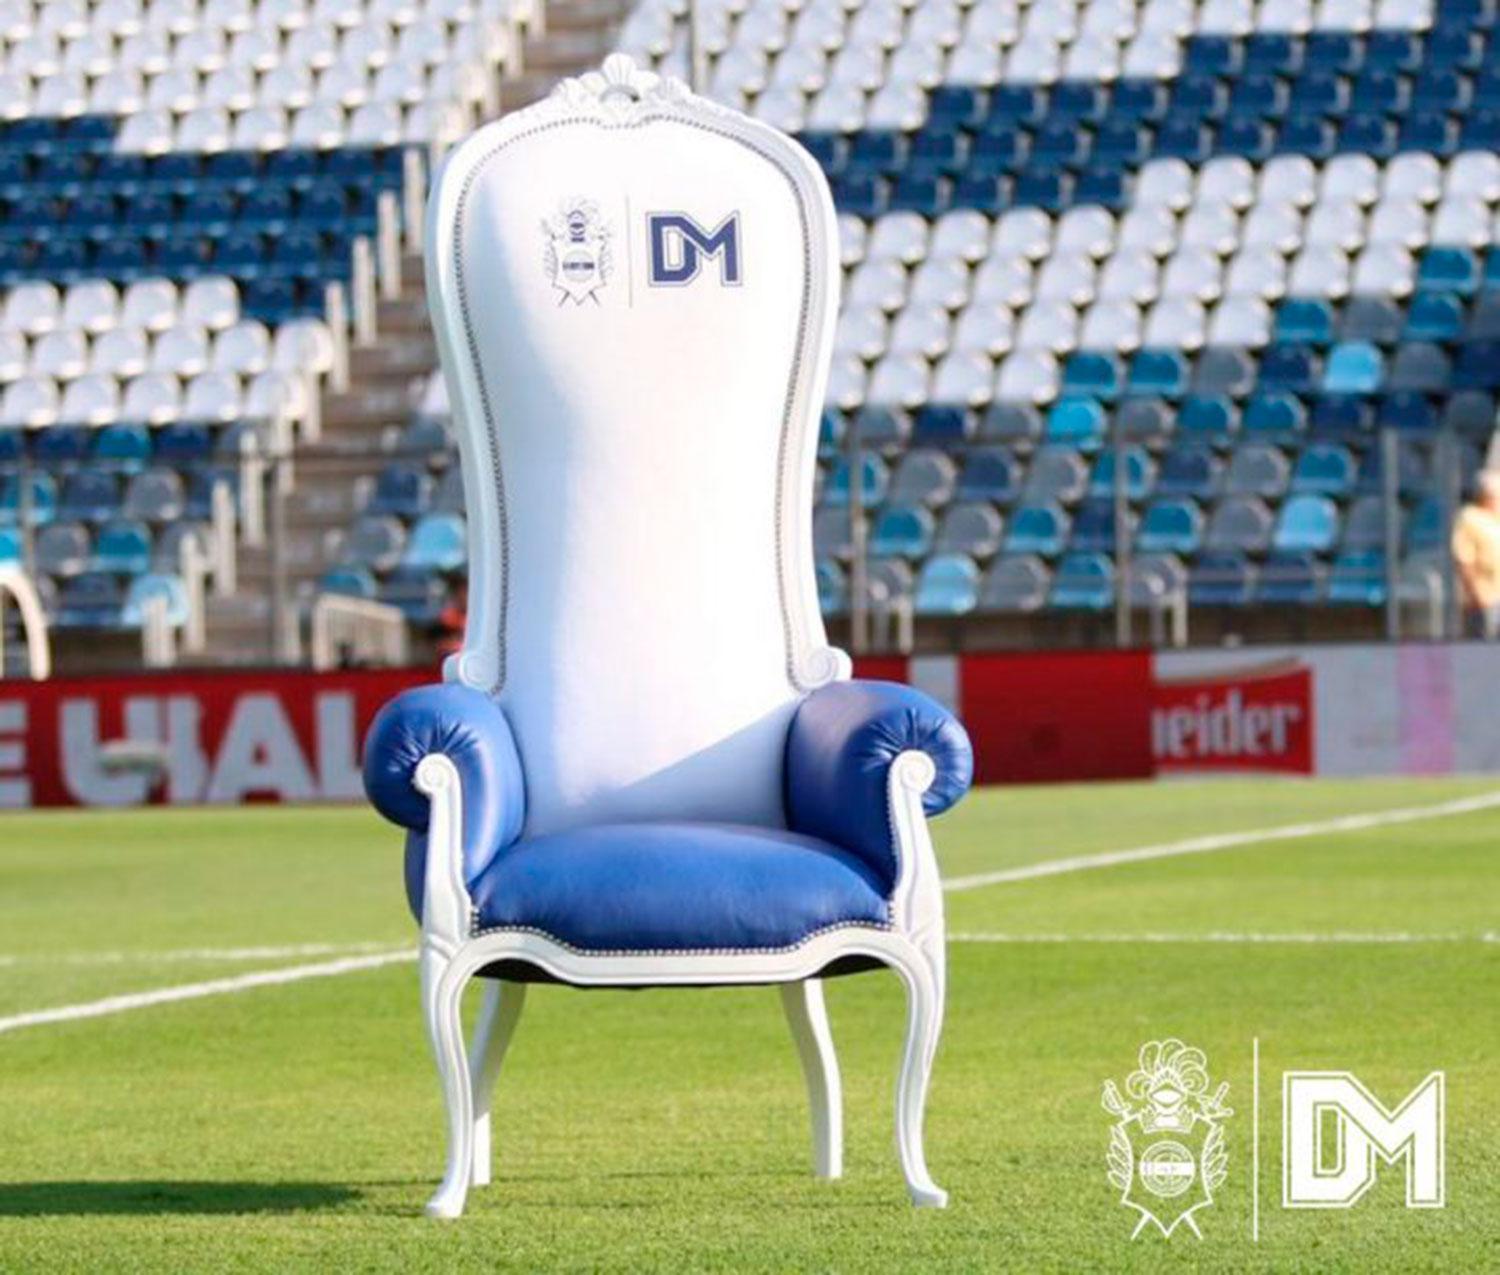 RÉPLICA. Podés comprar el mismo sillón por $ 50.000 pero sin la firma de Diego. FOTO TOMADA DE GIMNASIA.ORG.AR